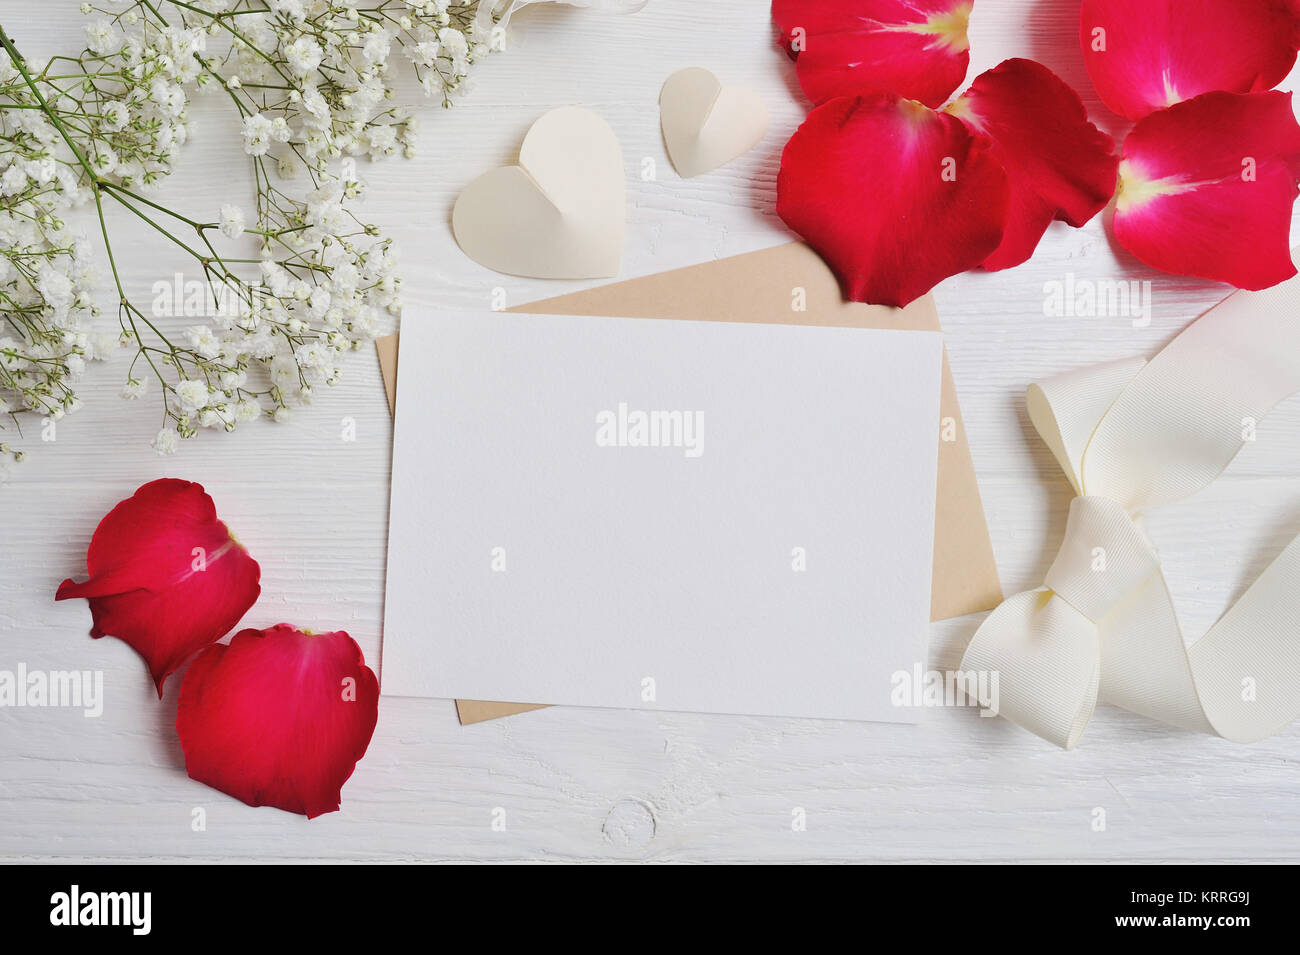 Mockup composizione di fiori da gypsophila con un cuore lettera con il rosso dei petali di rosa sul bianco sullo sfondo di legno. Il giorno di San Valentino. Appartamento laico, vista dall'alto wi Foto Stock